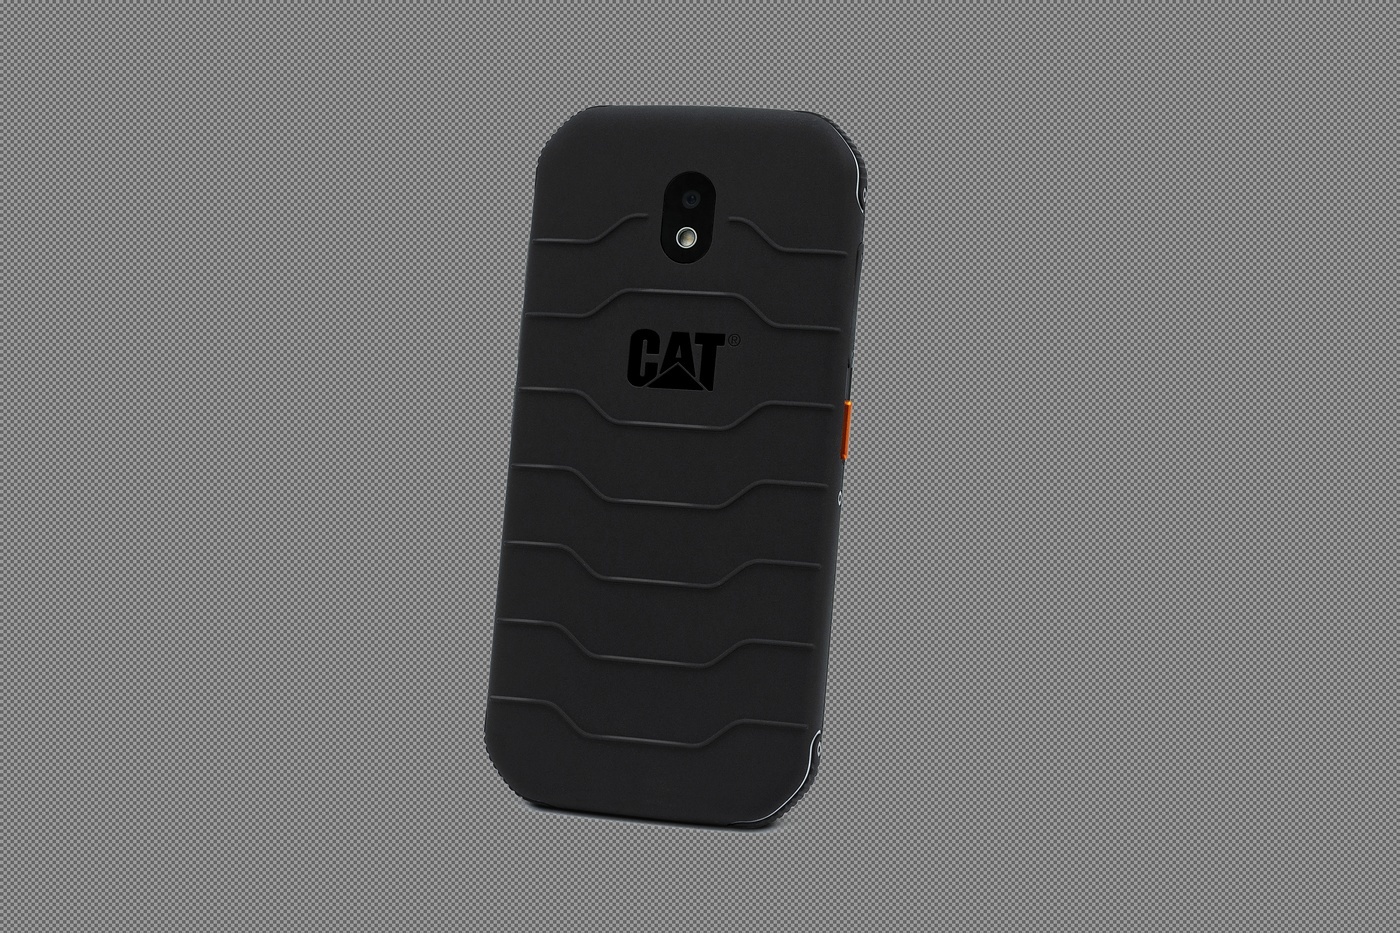 CAT Phone The CAT S42 smartphone